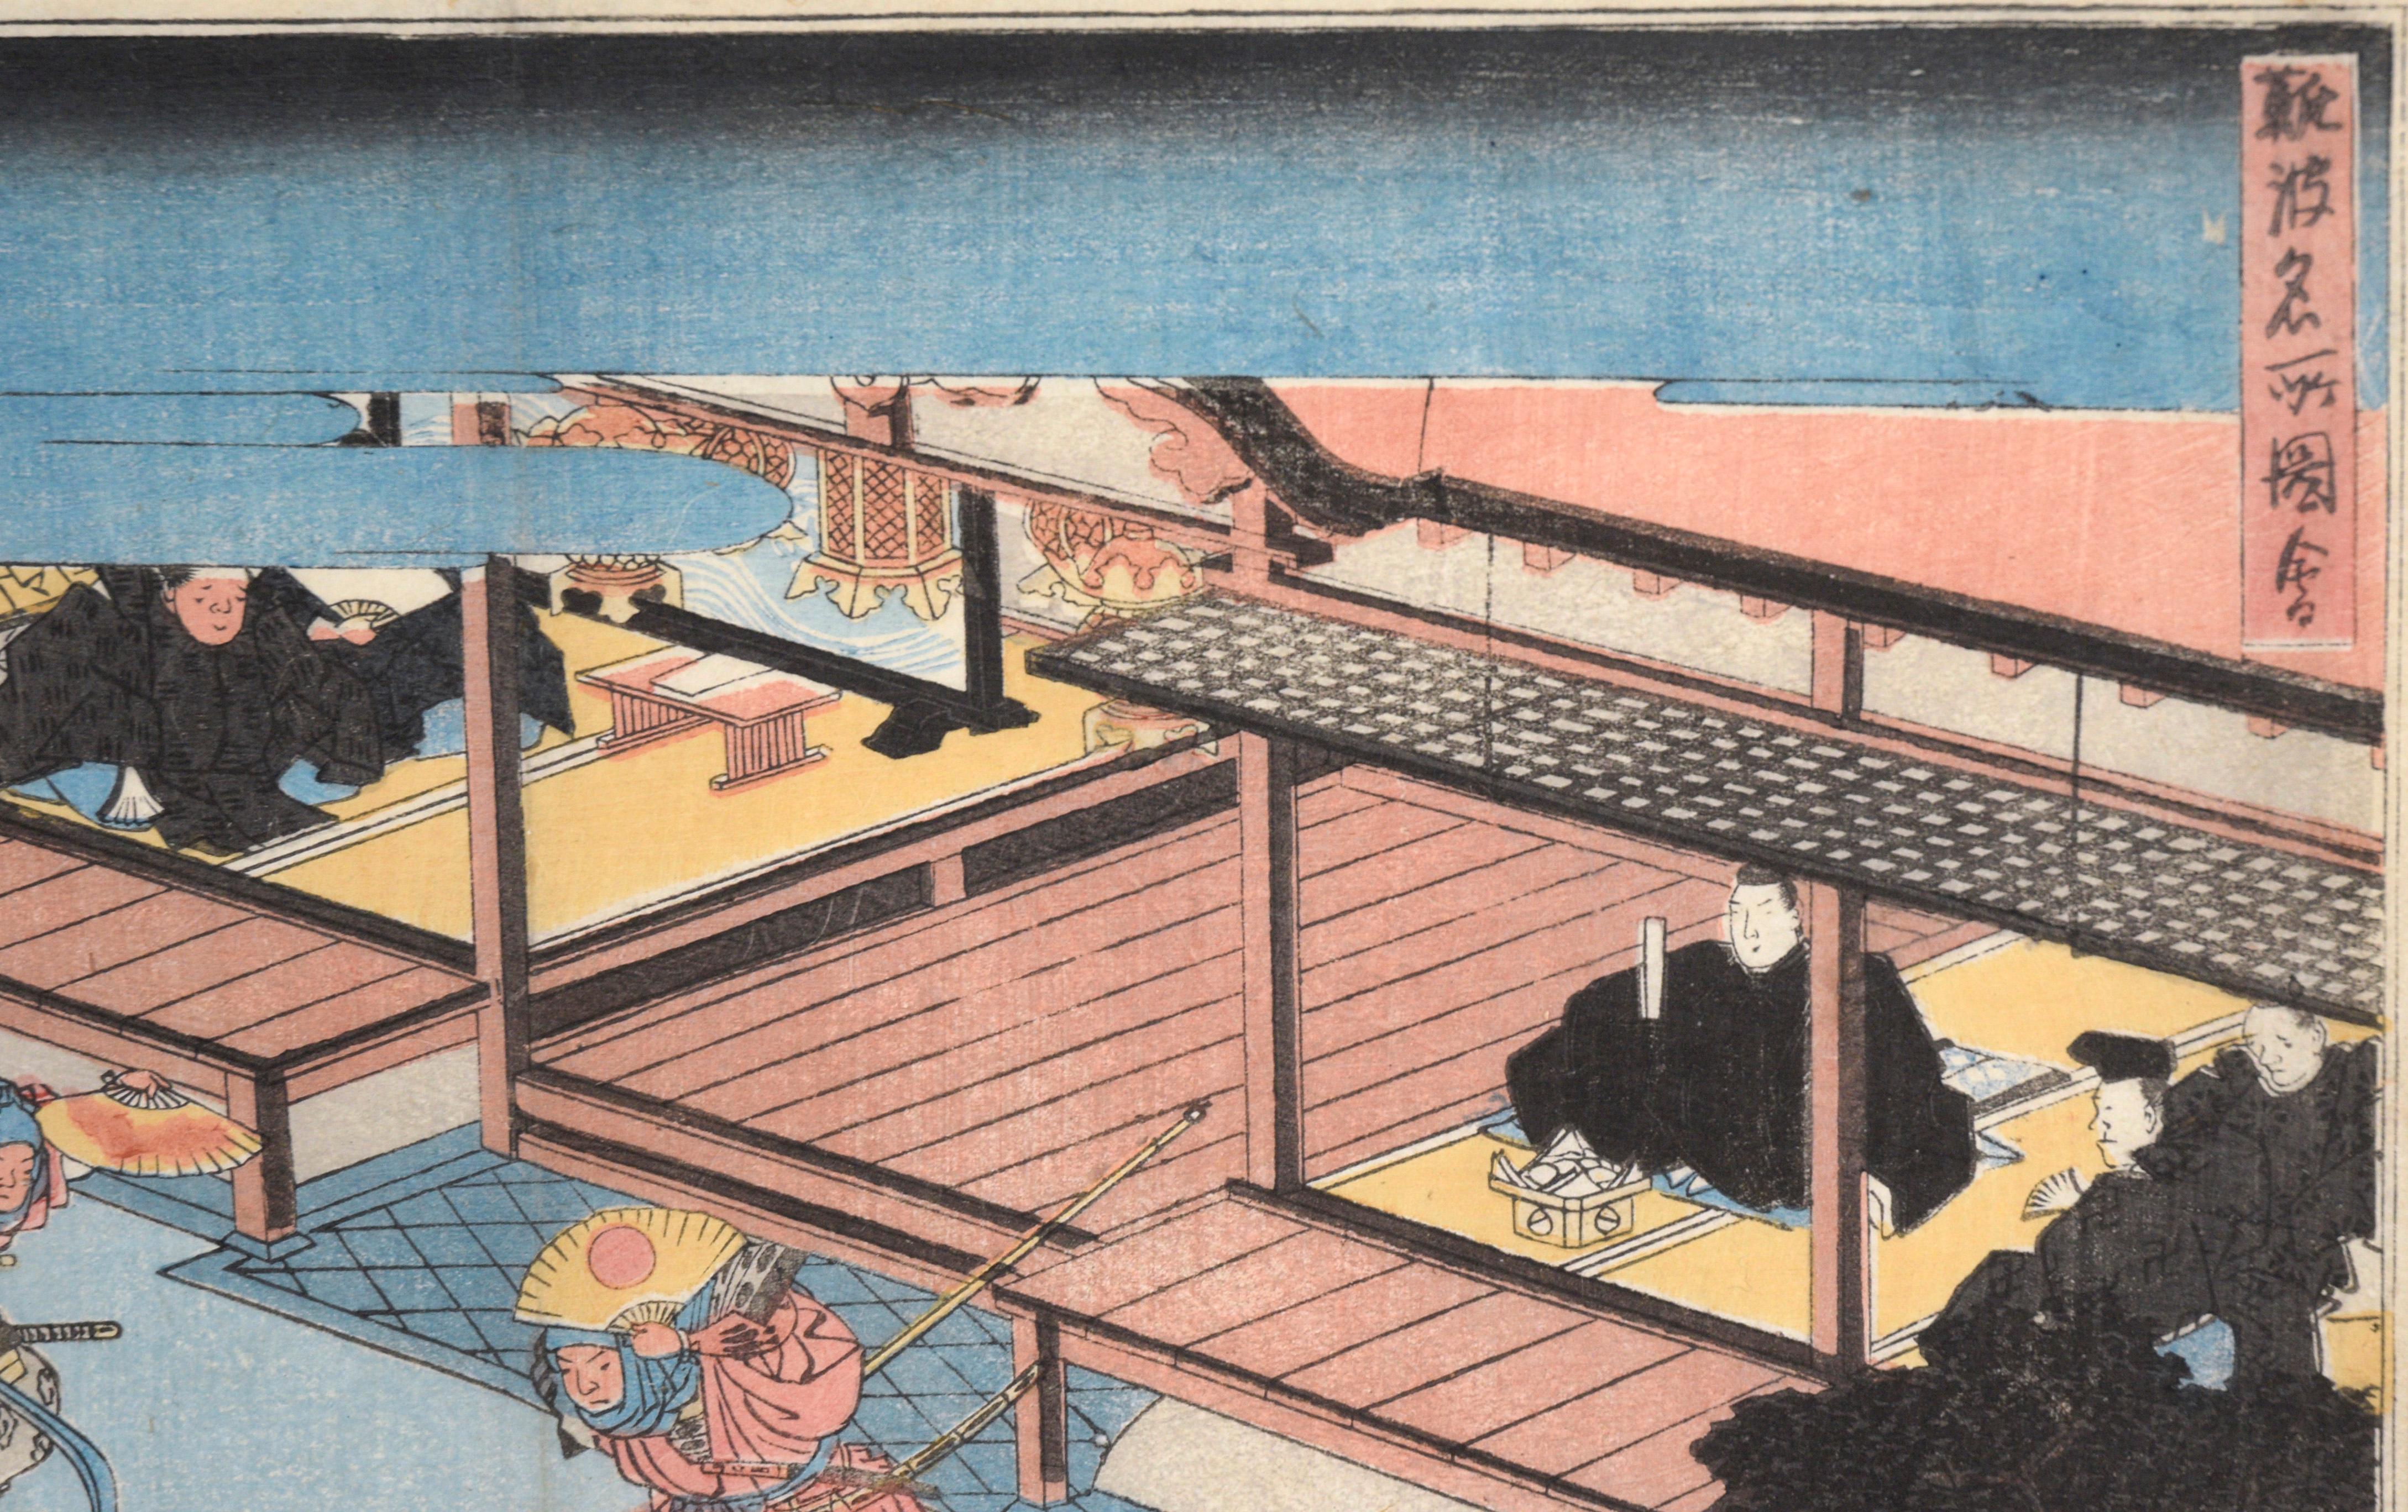 Sumiyoshi : danse de Dengaku exécutée lors d'une cérémonie Onda - gravure sur bois

Gravure sur bois lumineuse d'Utagawa Hiroshige (Japonais, 1797-1858). Dans cette scène, deux danseurs munis d'épées et d'éventails se font face, au centre d'une